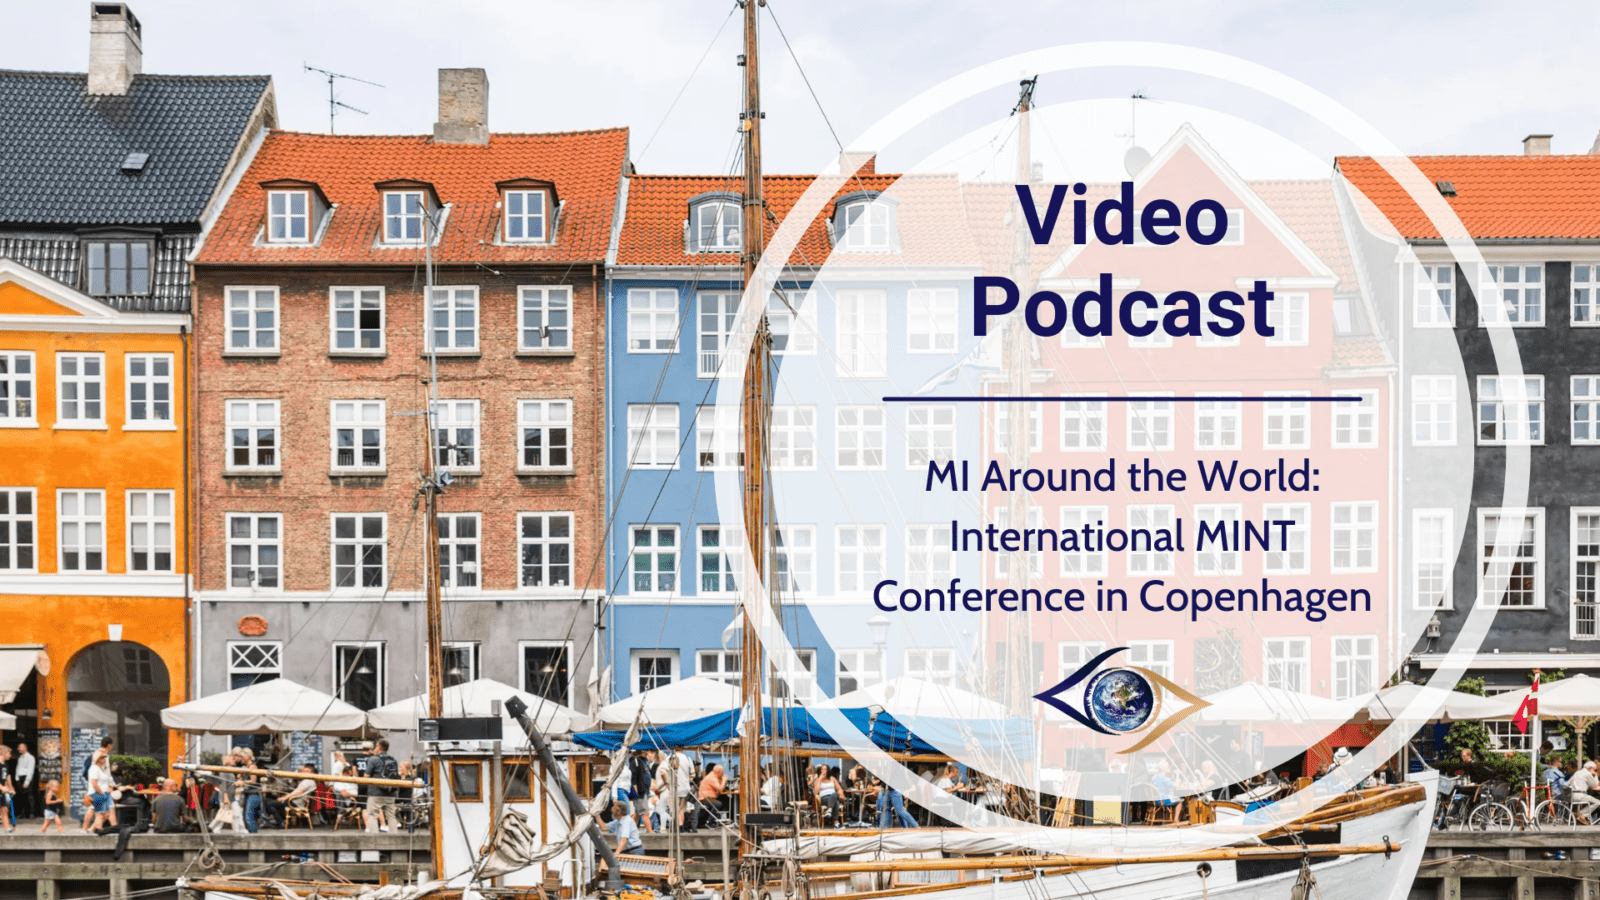 MI Around the World: International MINT Conference in Copenhagen